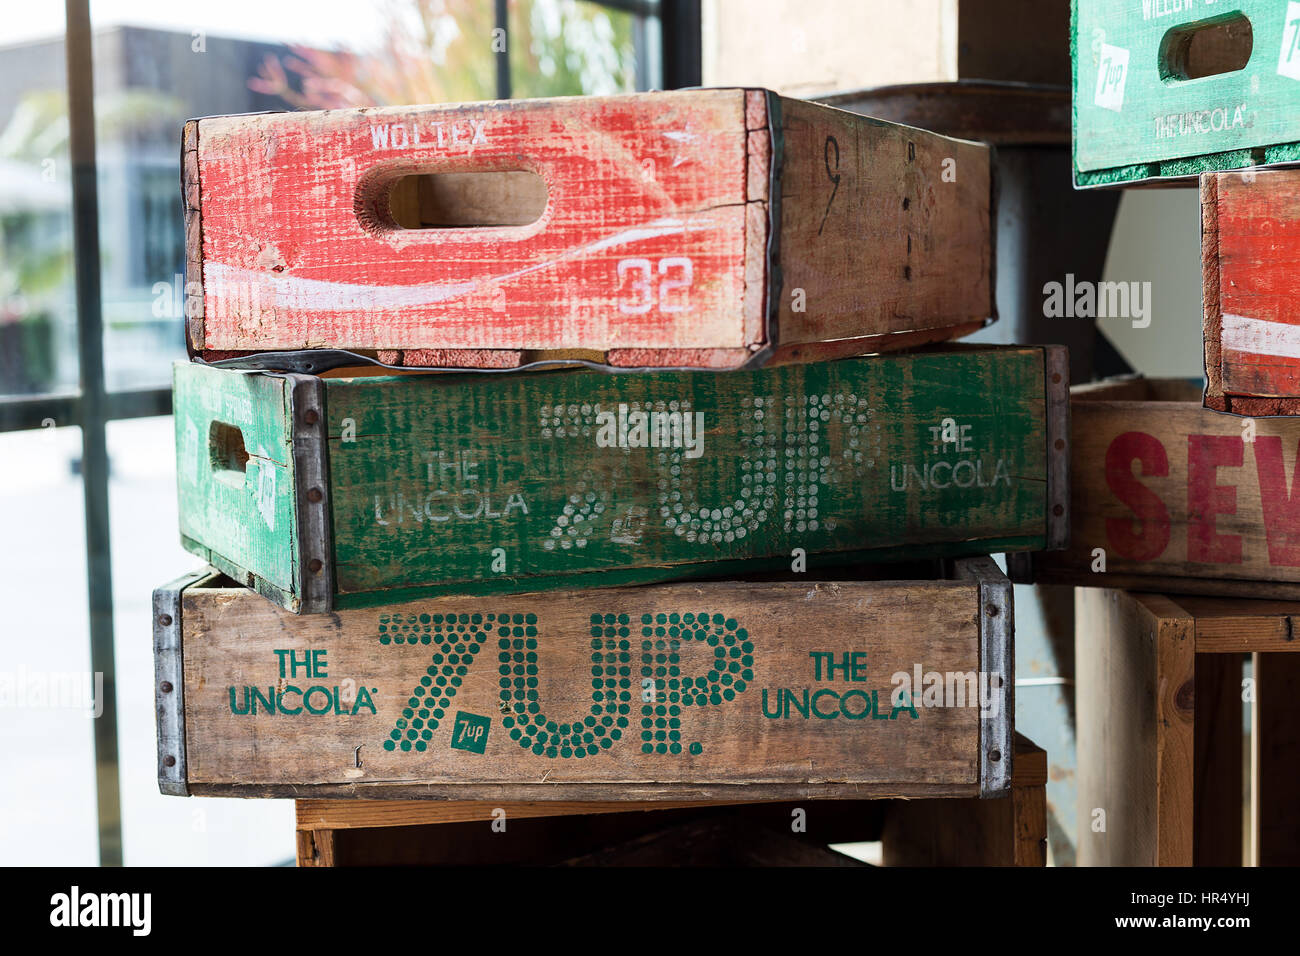 Tienda de refrescos con estuches vintage de 7UP y Coca Cola Foto de stock